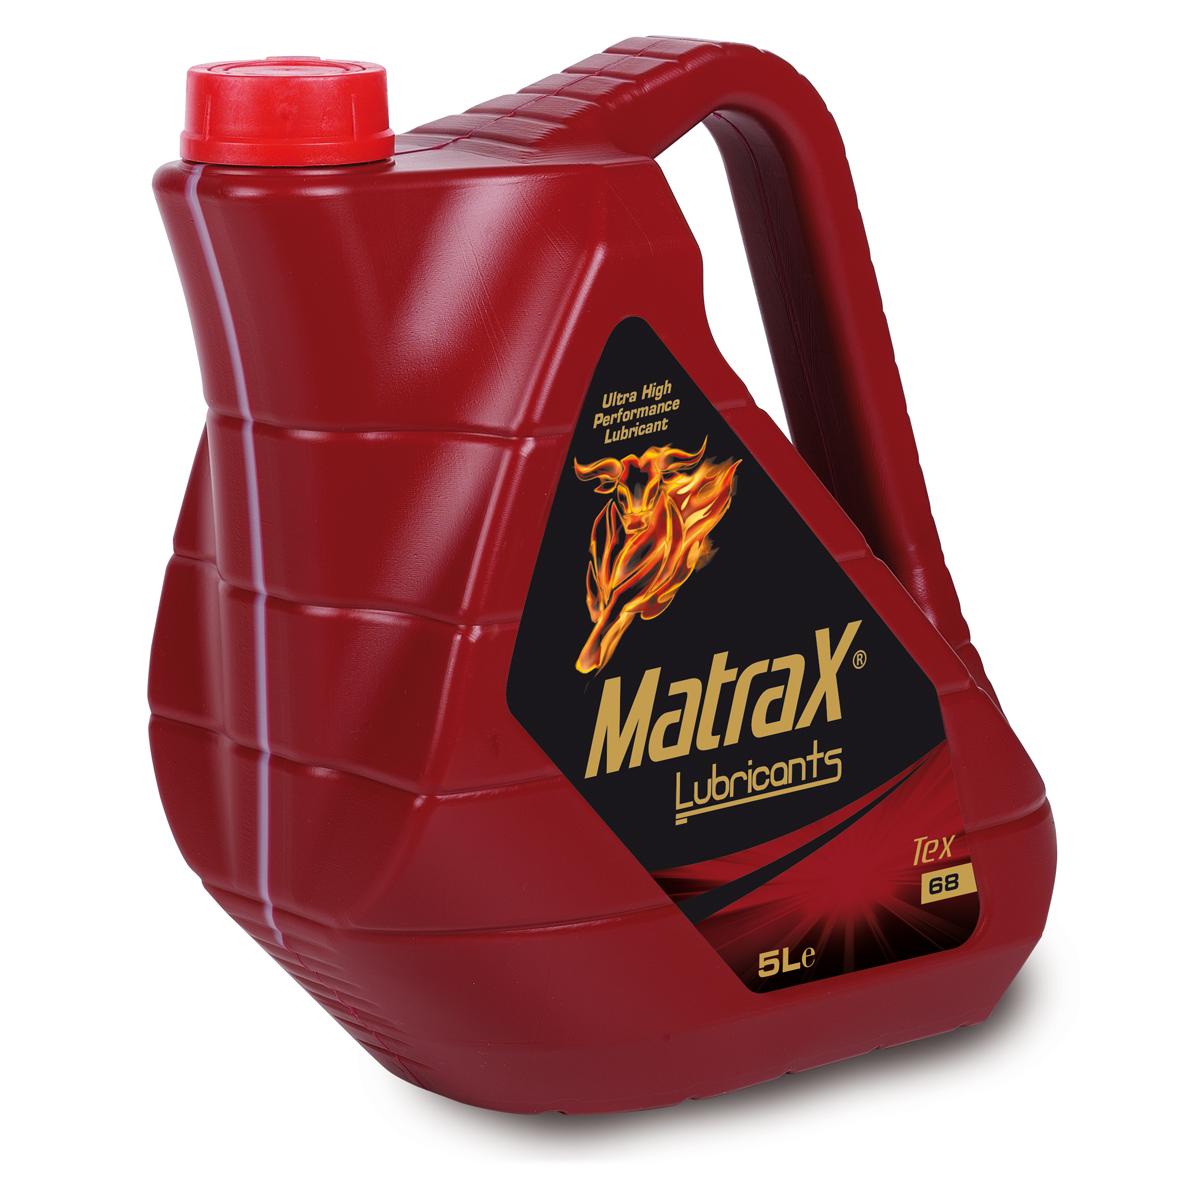 matrax-lubricants-tex-68-5l